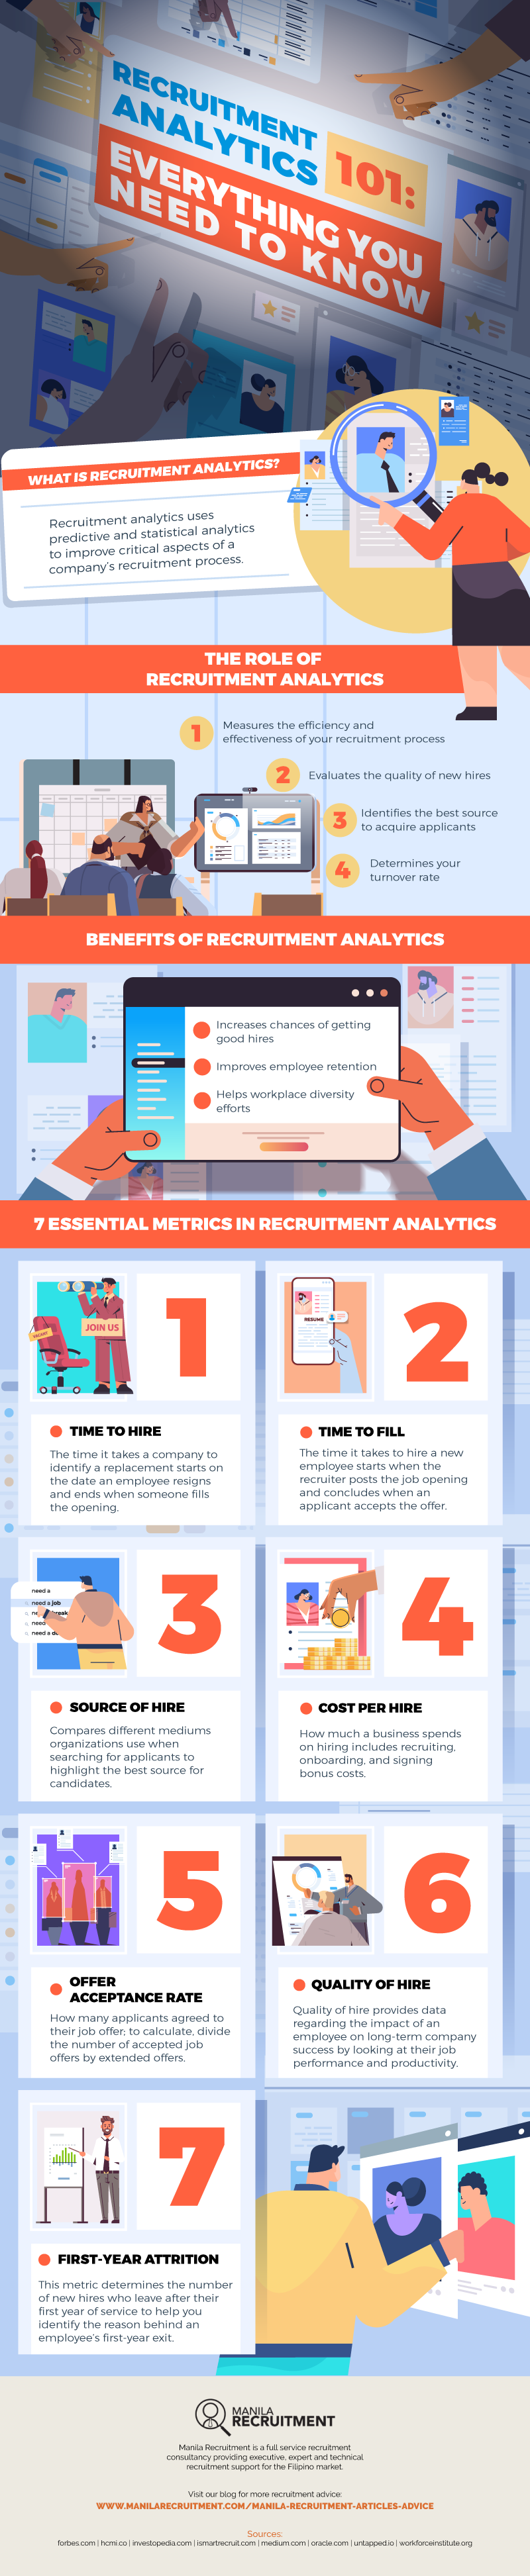 recruitment analytics infographic